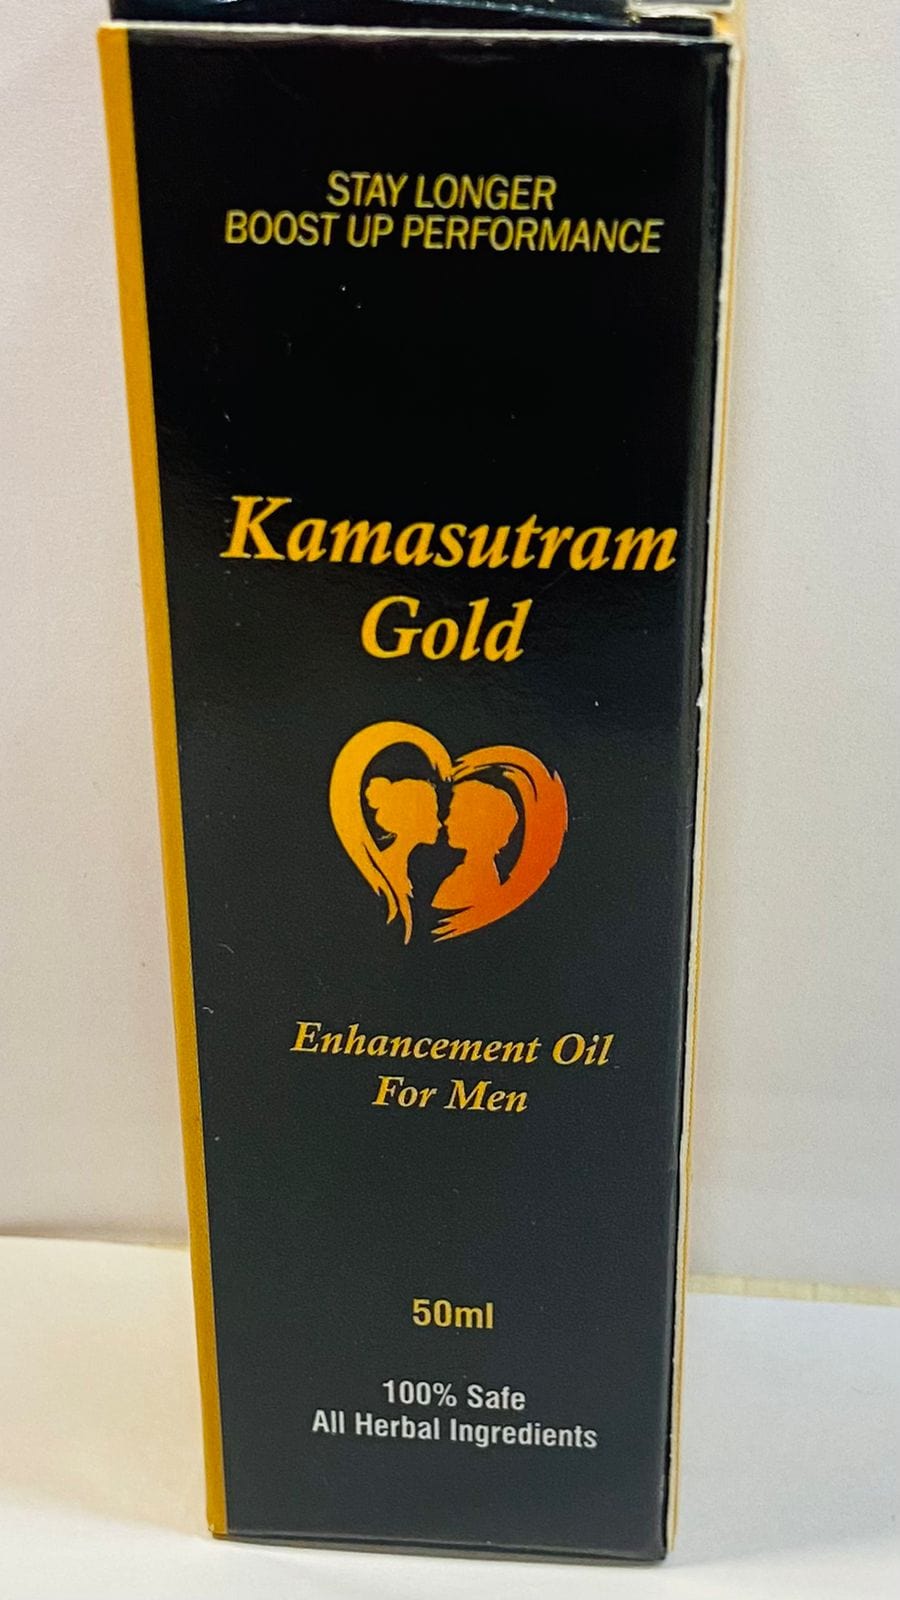 GUDHEALTHY Kamasutram Gold Oil - Stamina Oil for men